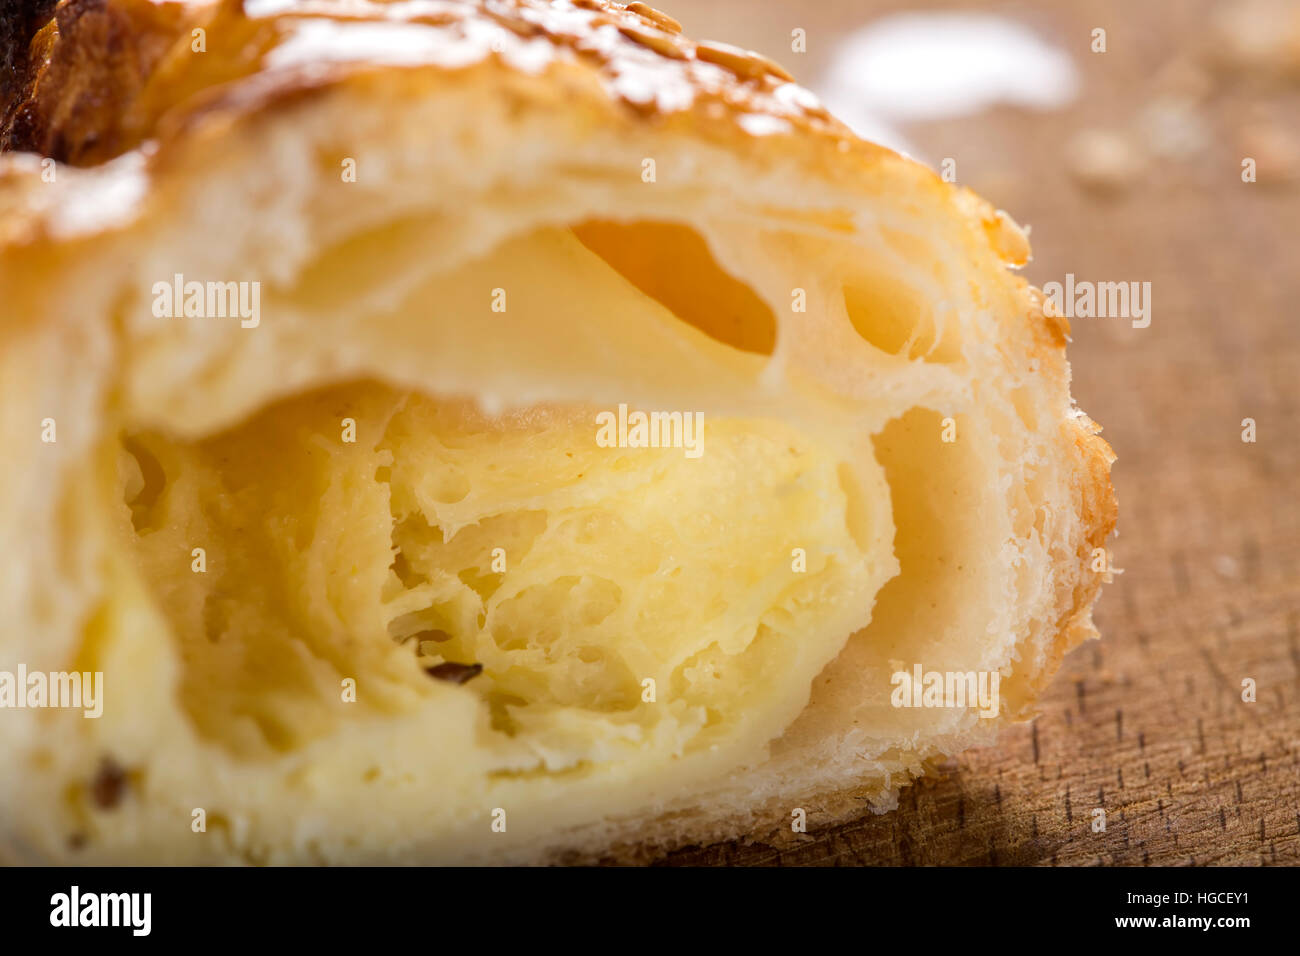 Innenraum von einem Stück Käse Patty verschmiert mit Honig und Sesam Samen auf hölzernen Hintergrund Stockfoto